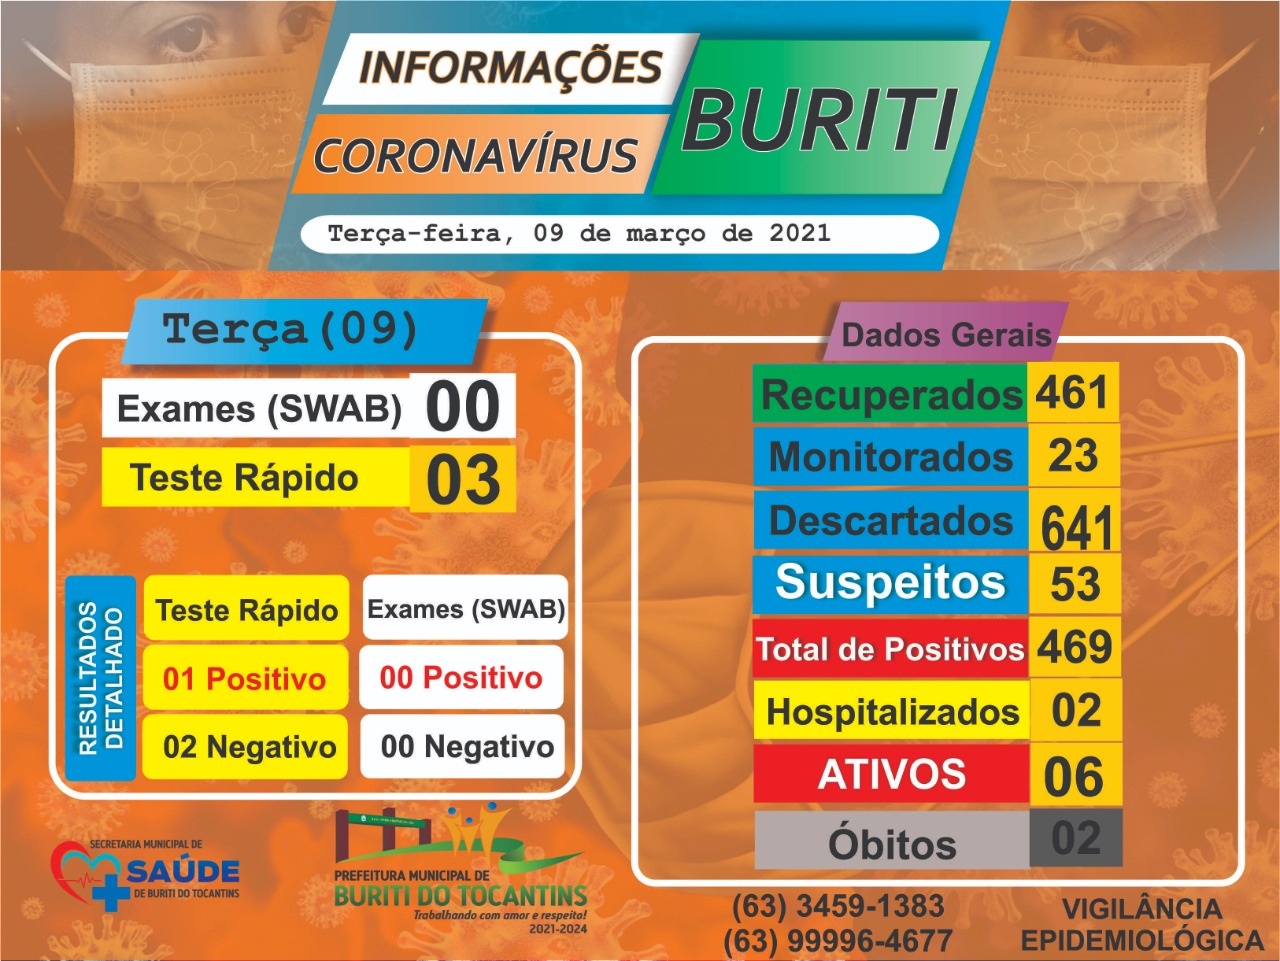 SAÚDE: Boletim e Informações COVID-19 da cidade de Buriti do Tocantins do dia 09 de março de 2021.